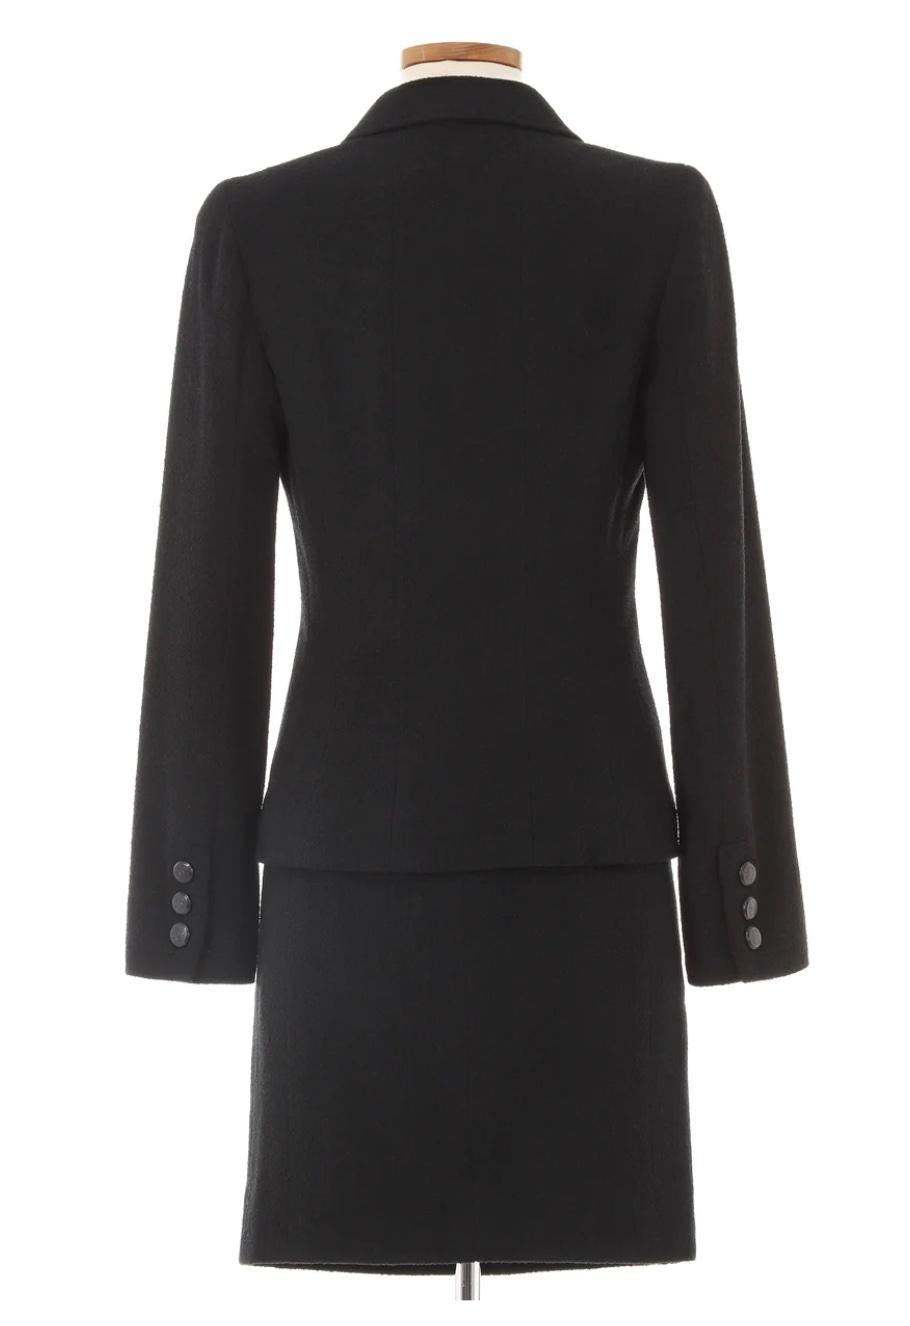 Herbst 1998 Chanel Schwarzer Rock Anzug. Klassisches und zeitloses Stück von Chanel aus schwarzer Wolle mit schwarzen Chanel Knöpfen. Can separat getragen werden für vielseitige Einzelstücke.

Markierte Größe (FR)36.